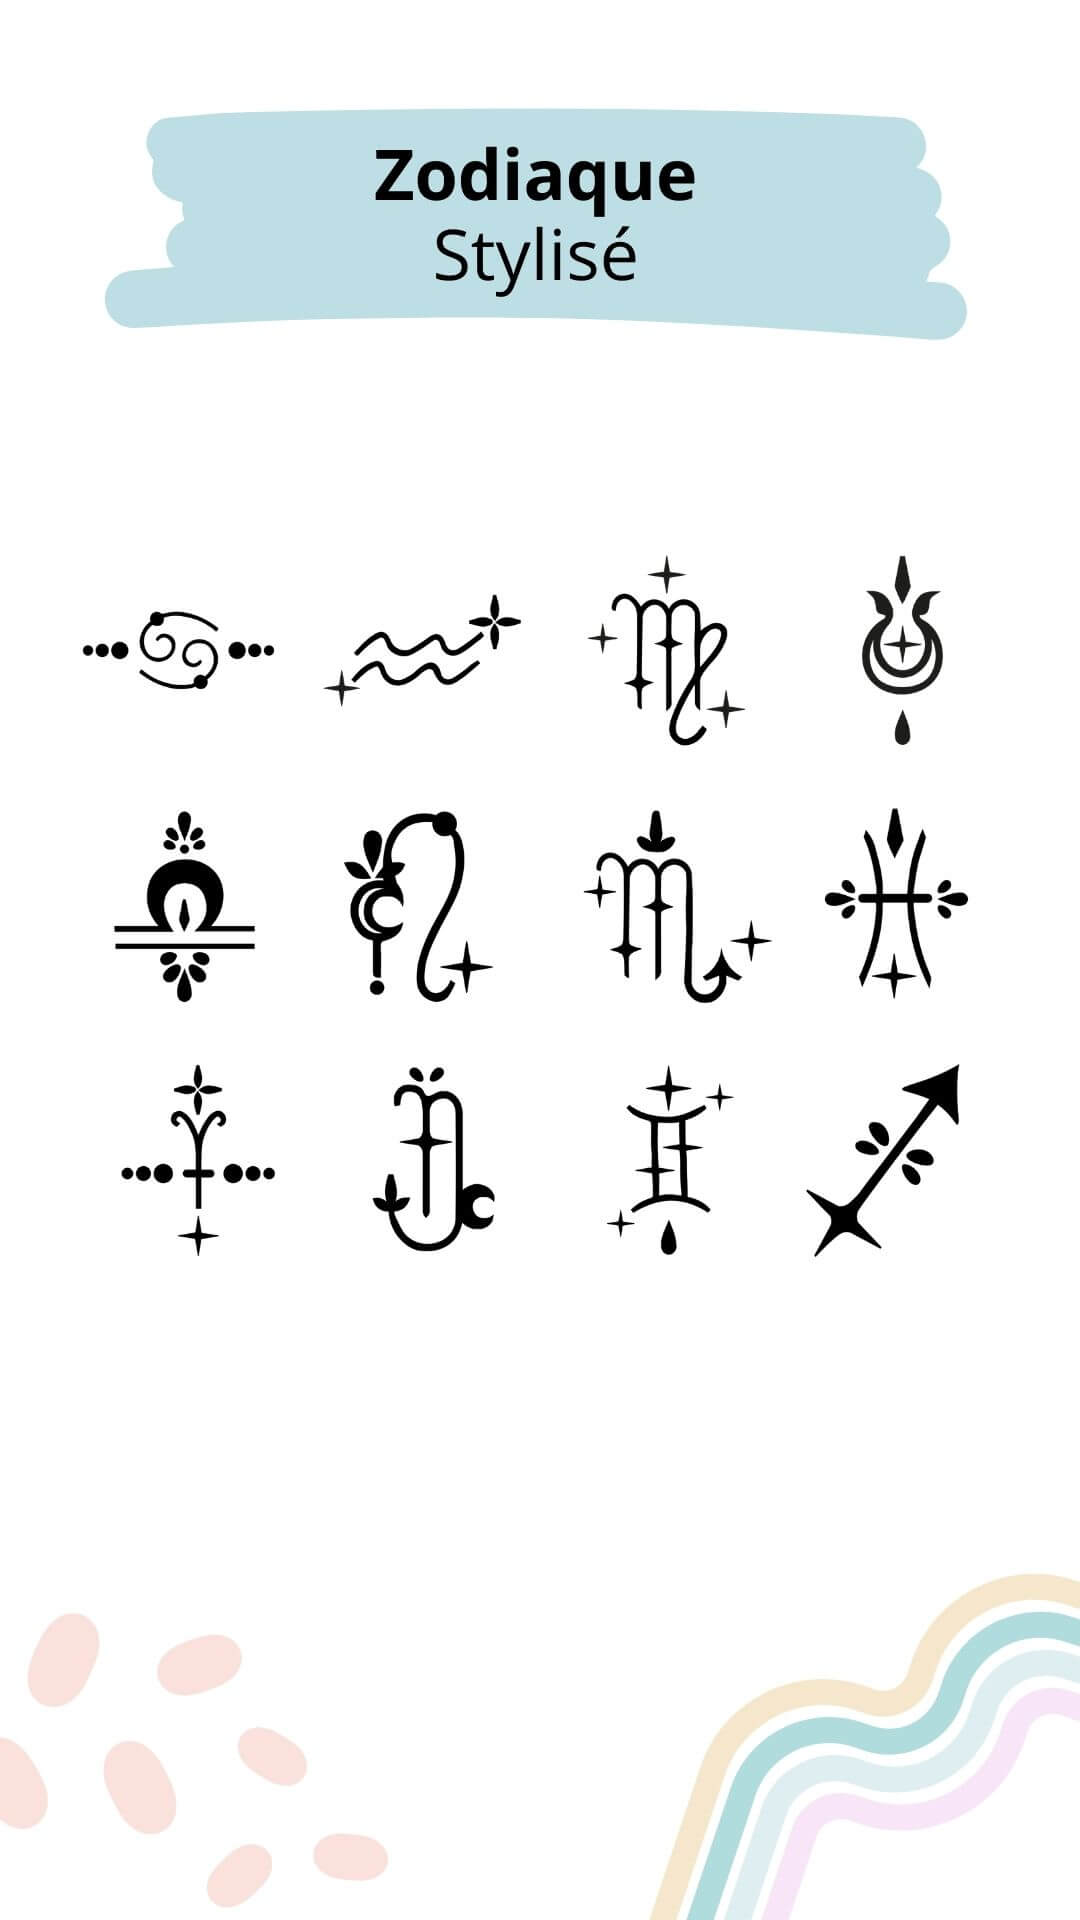 bijoux avec zodiaque stylisé